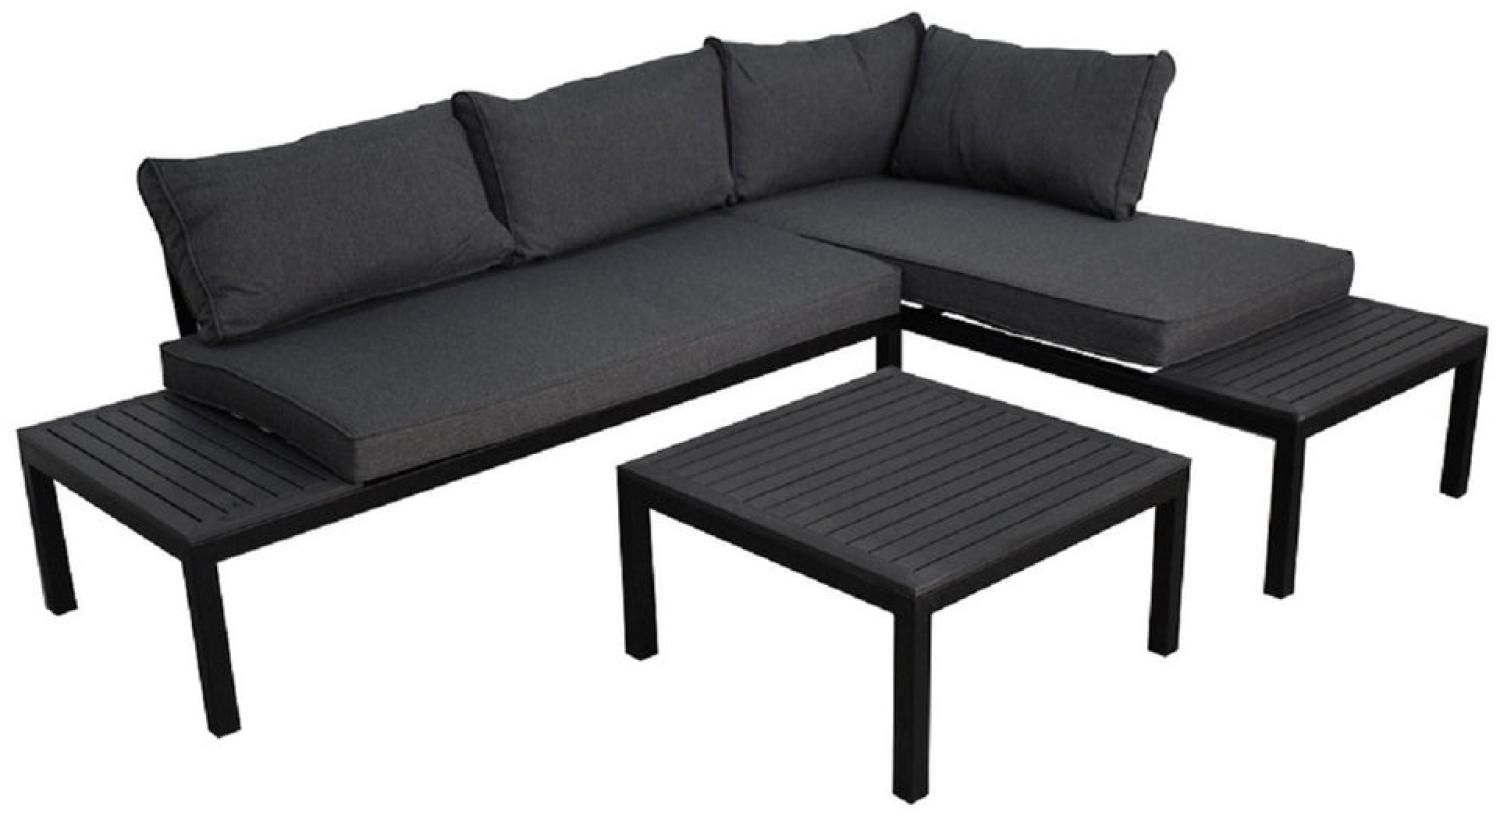 Luxus Premium Garten Lounge SET Esstisch Sitzgruppe Gartenmöbel Stahl Bild 1